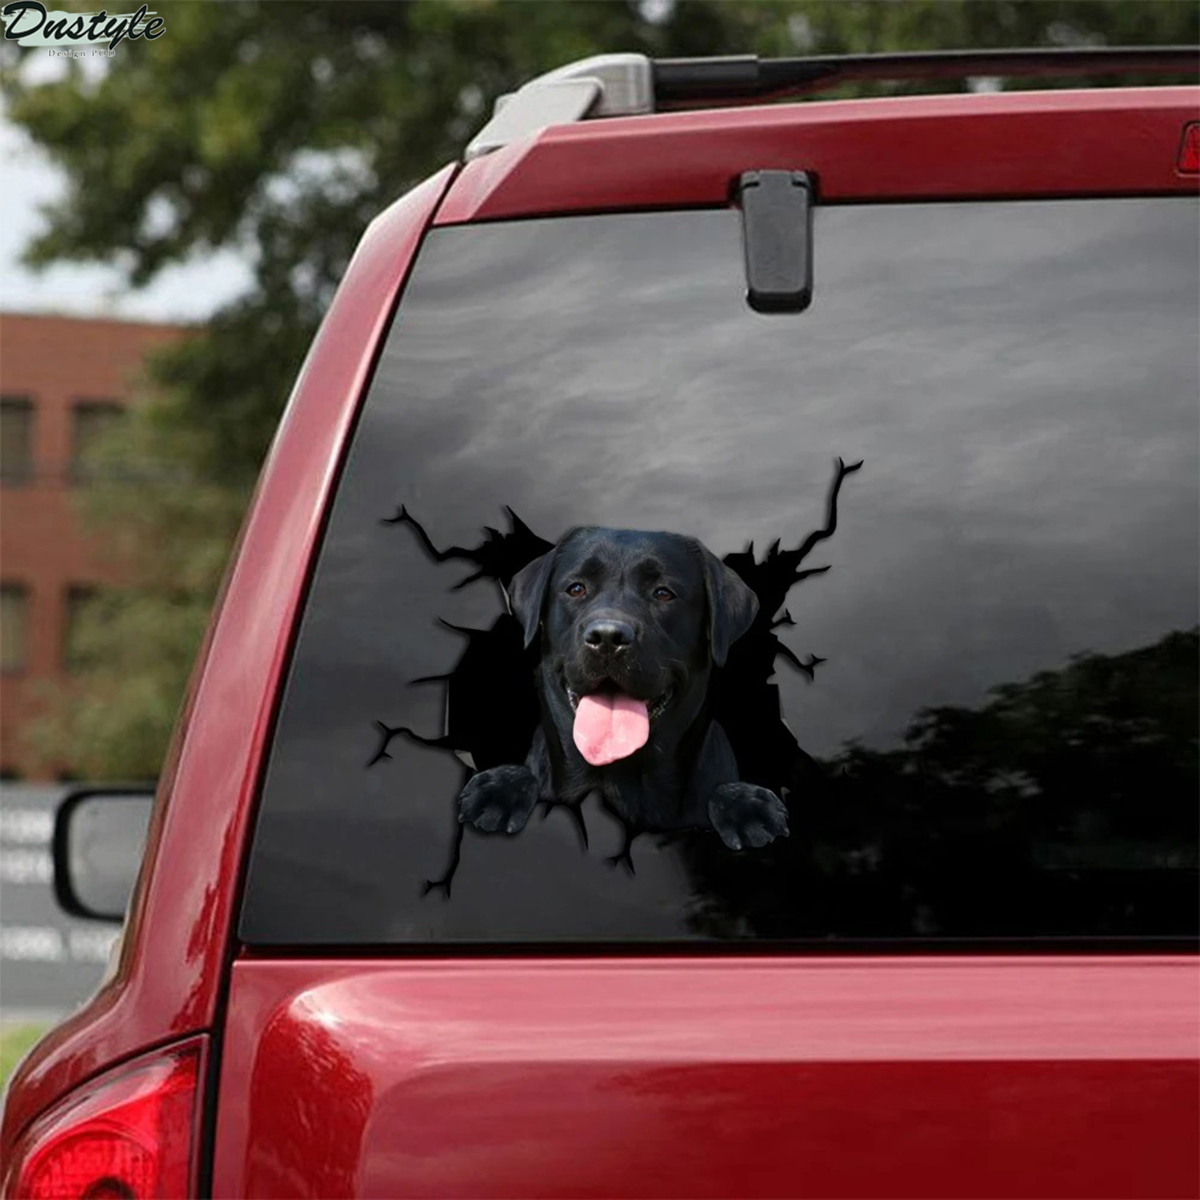 Black labrador crack car decal sticker 1